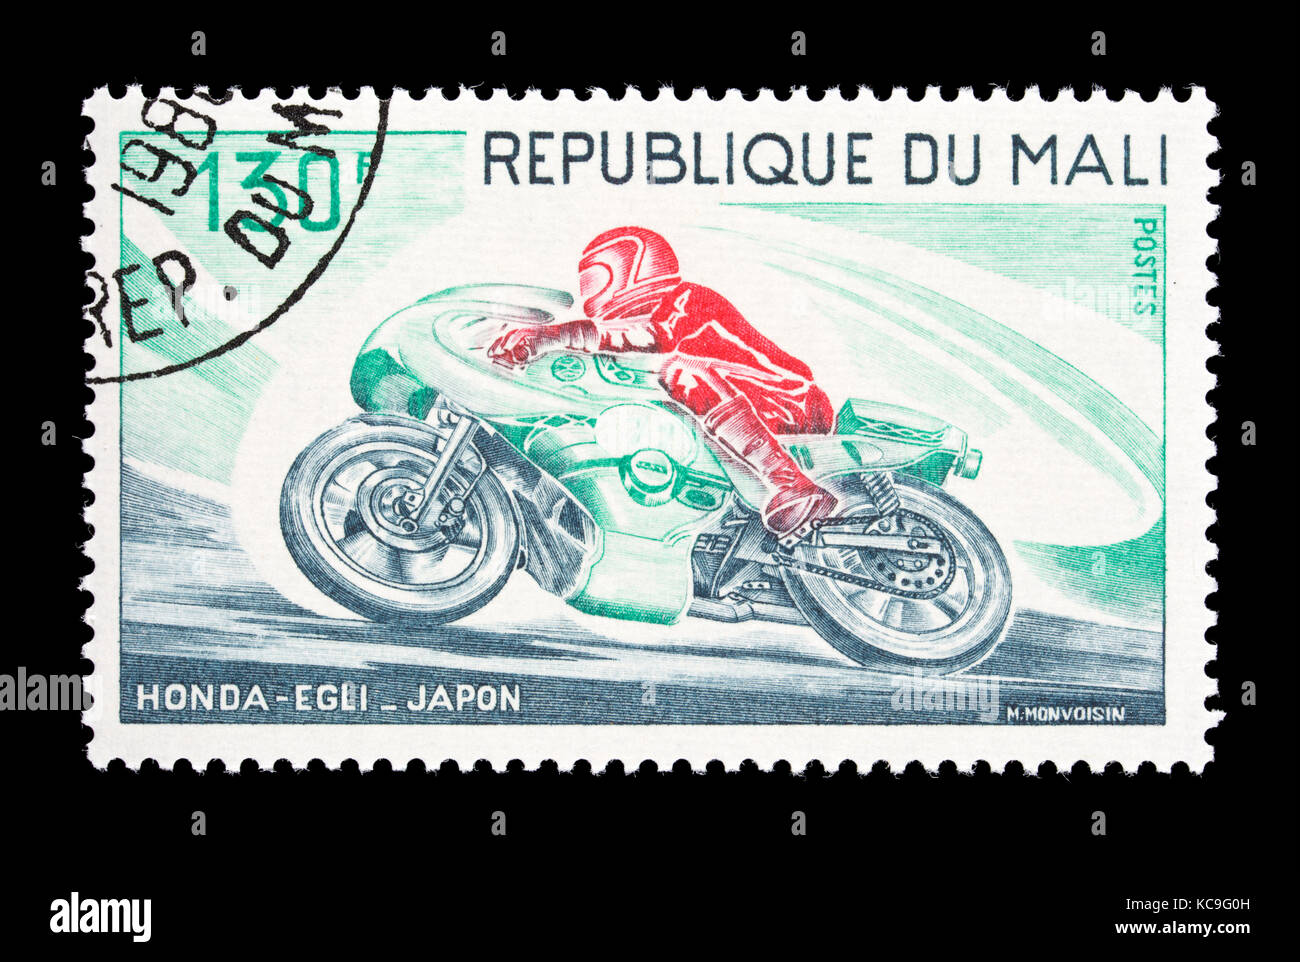 Francobollo da Mali raffigurante un uomo a cavallo di un Honda-Egli sport moto dal Giappone Foto Stock